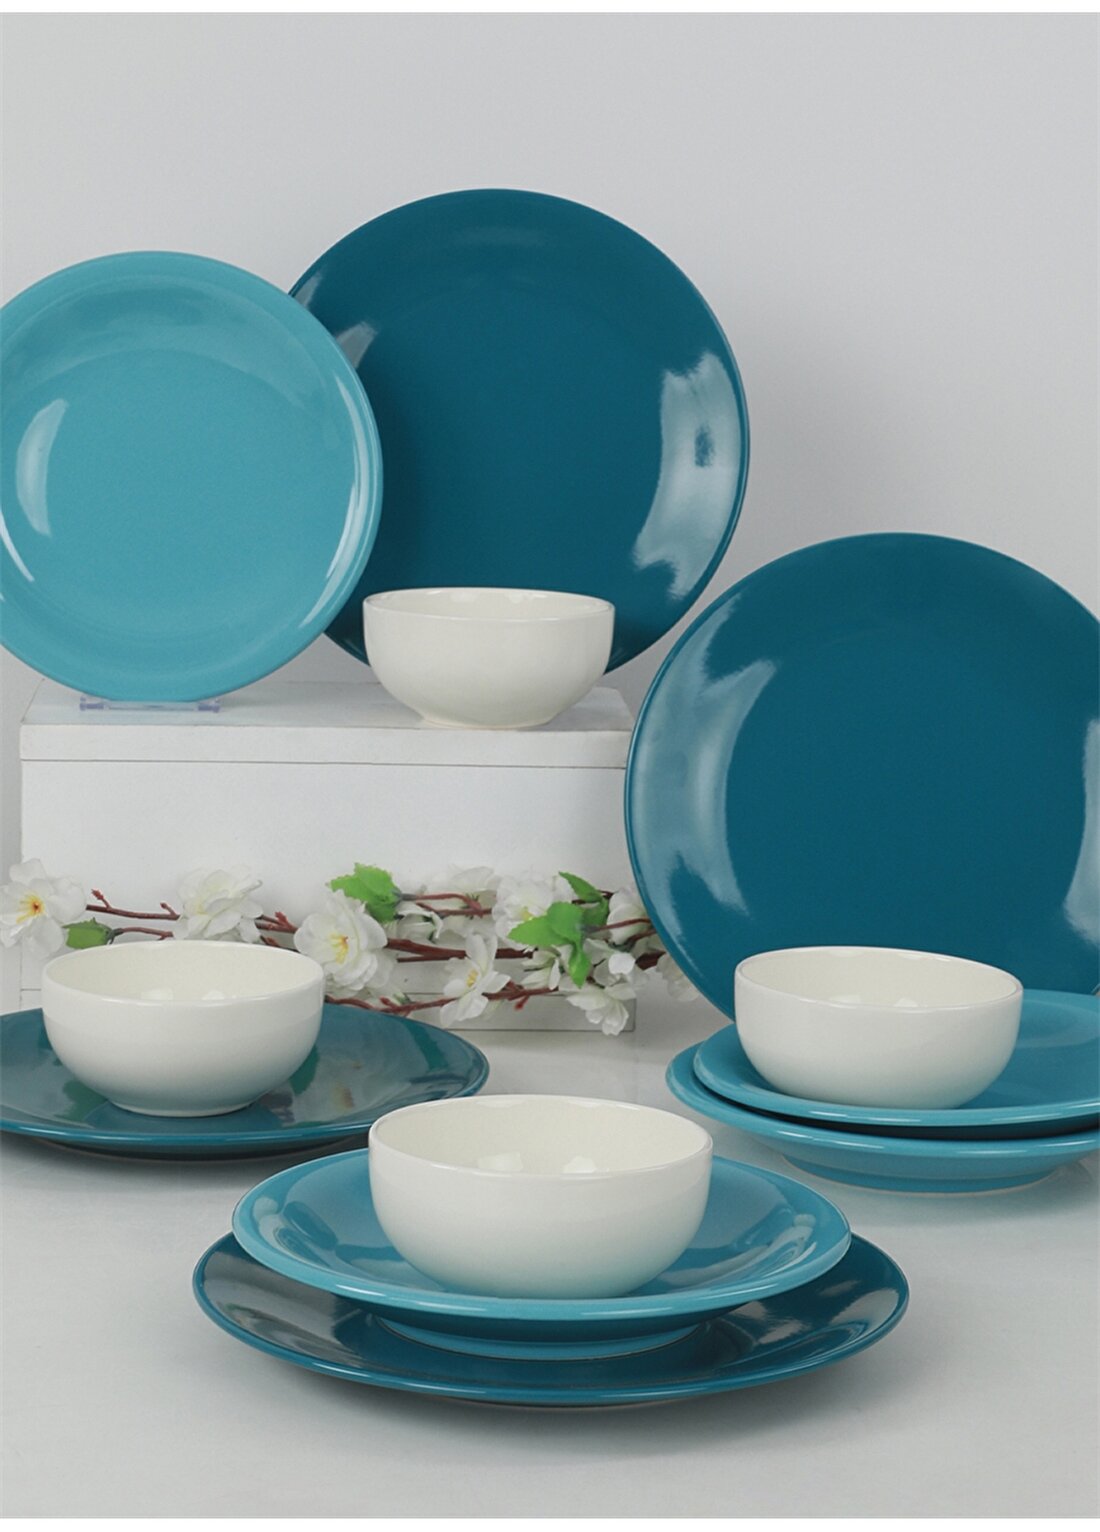 Keramika Ege Degrade Mavi Yemek Takımı 12 Parça 4 Kişilik - 423